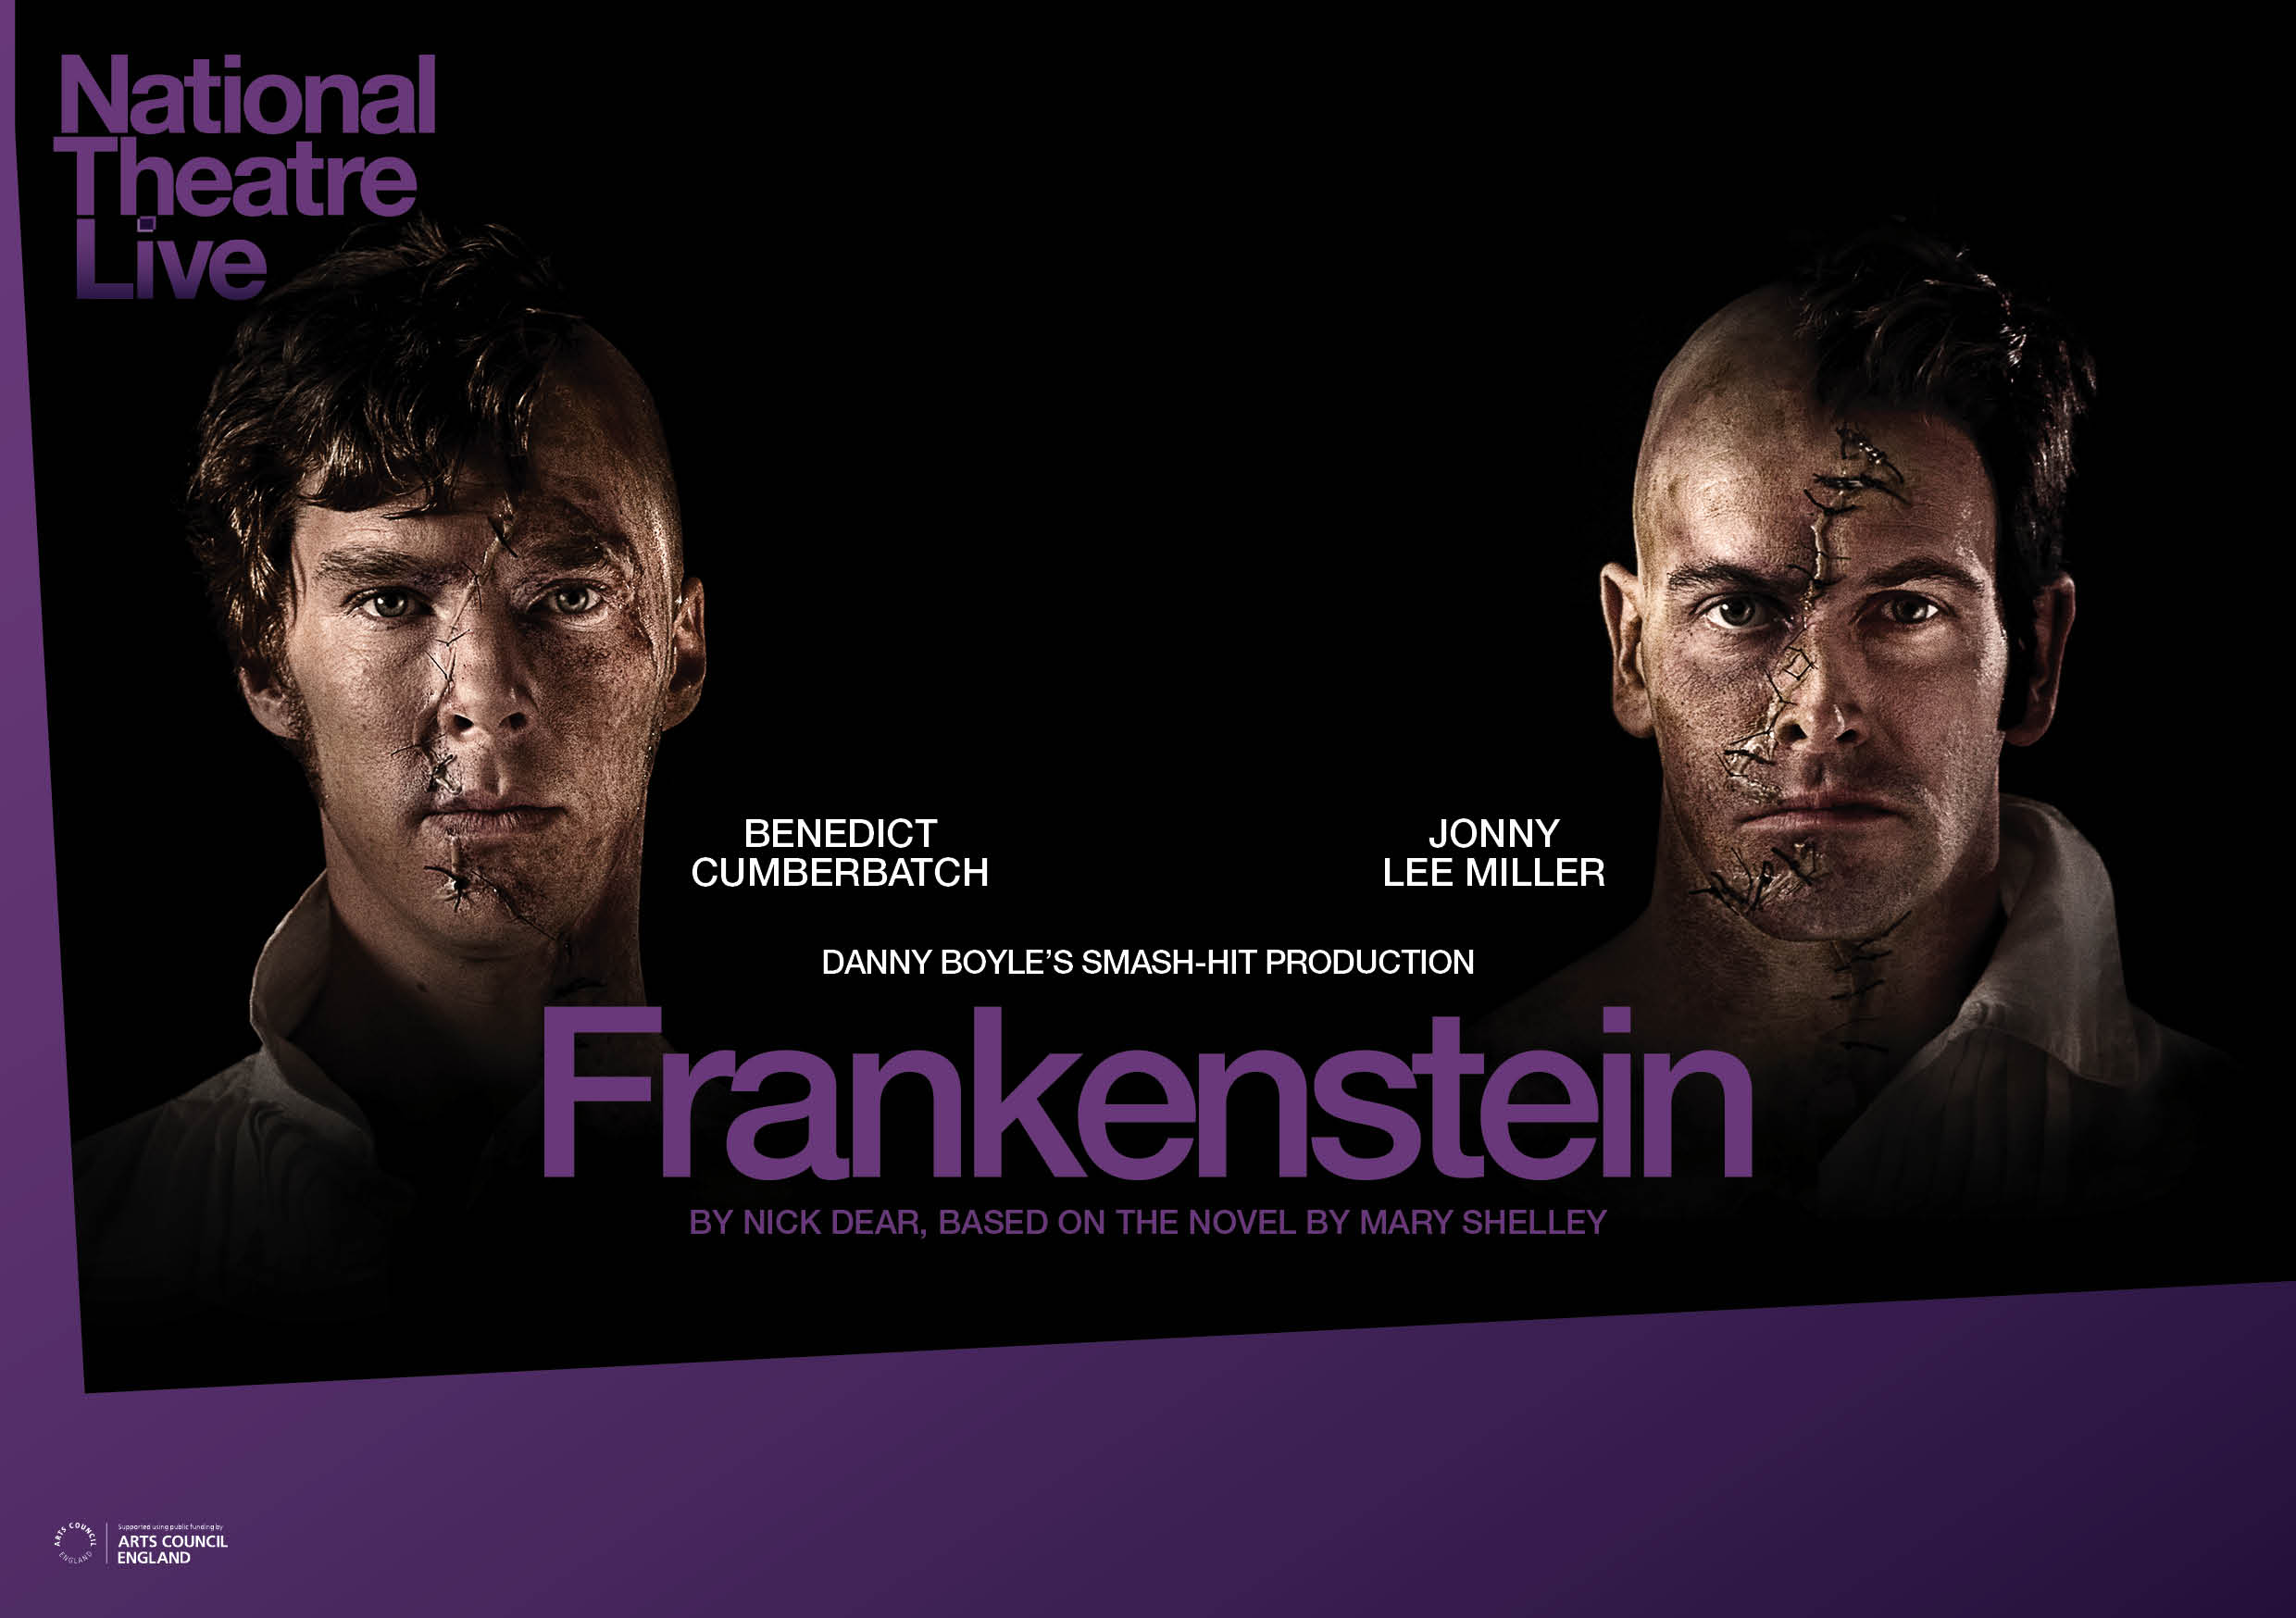 Benedict Cumberbatch and Lee Miller portray Frankenstein and the Creature in NTL's "Frankenstein"